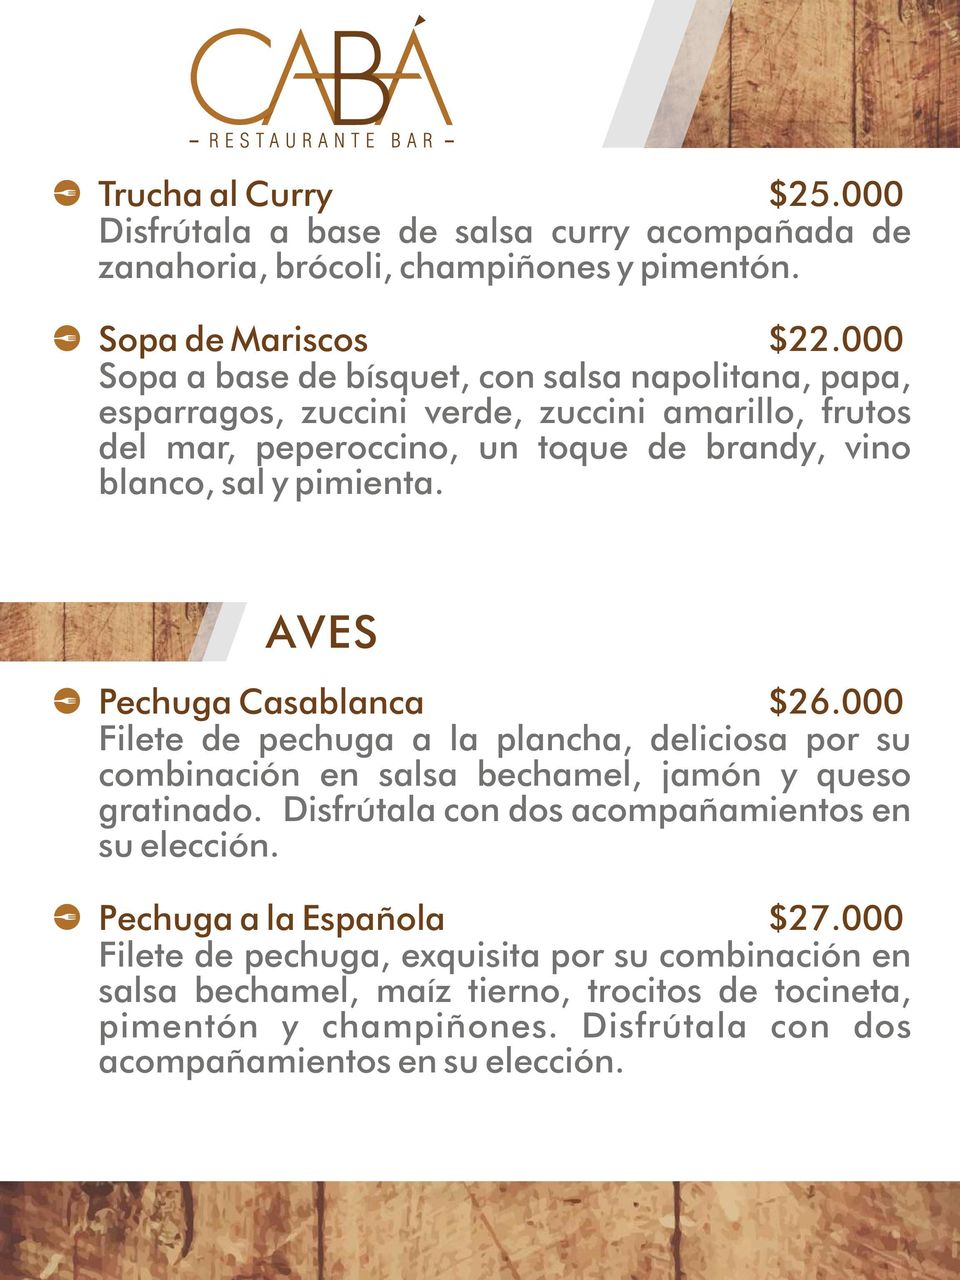 AVES Pechuga Casablanca $26.000 Filete de pechuga a la plancha, deliciosa por su combinación en salsa bechamel, jamón y queso gratinado.